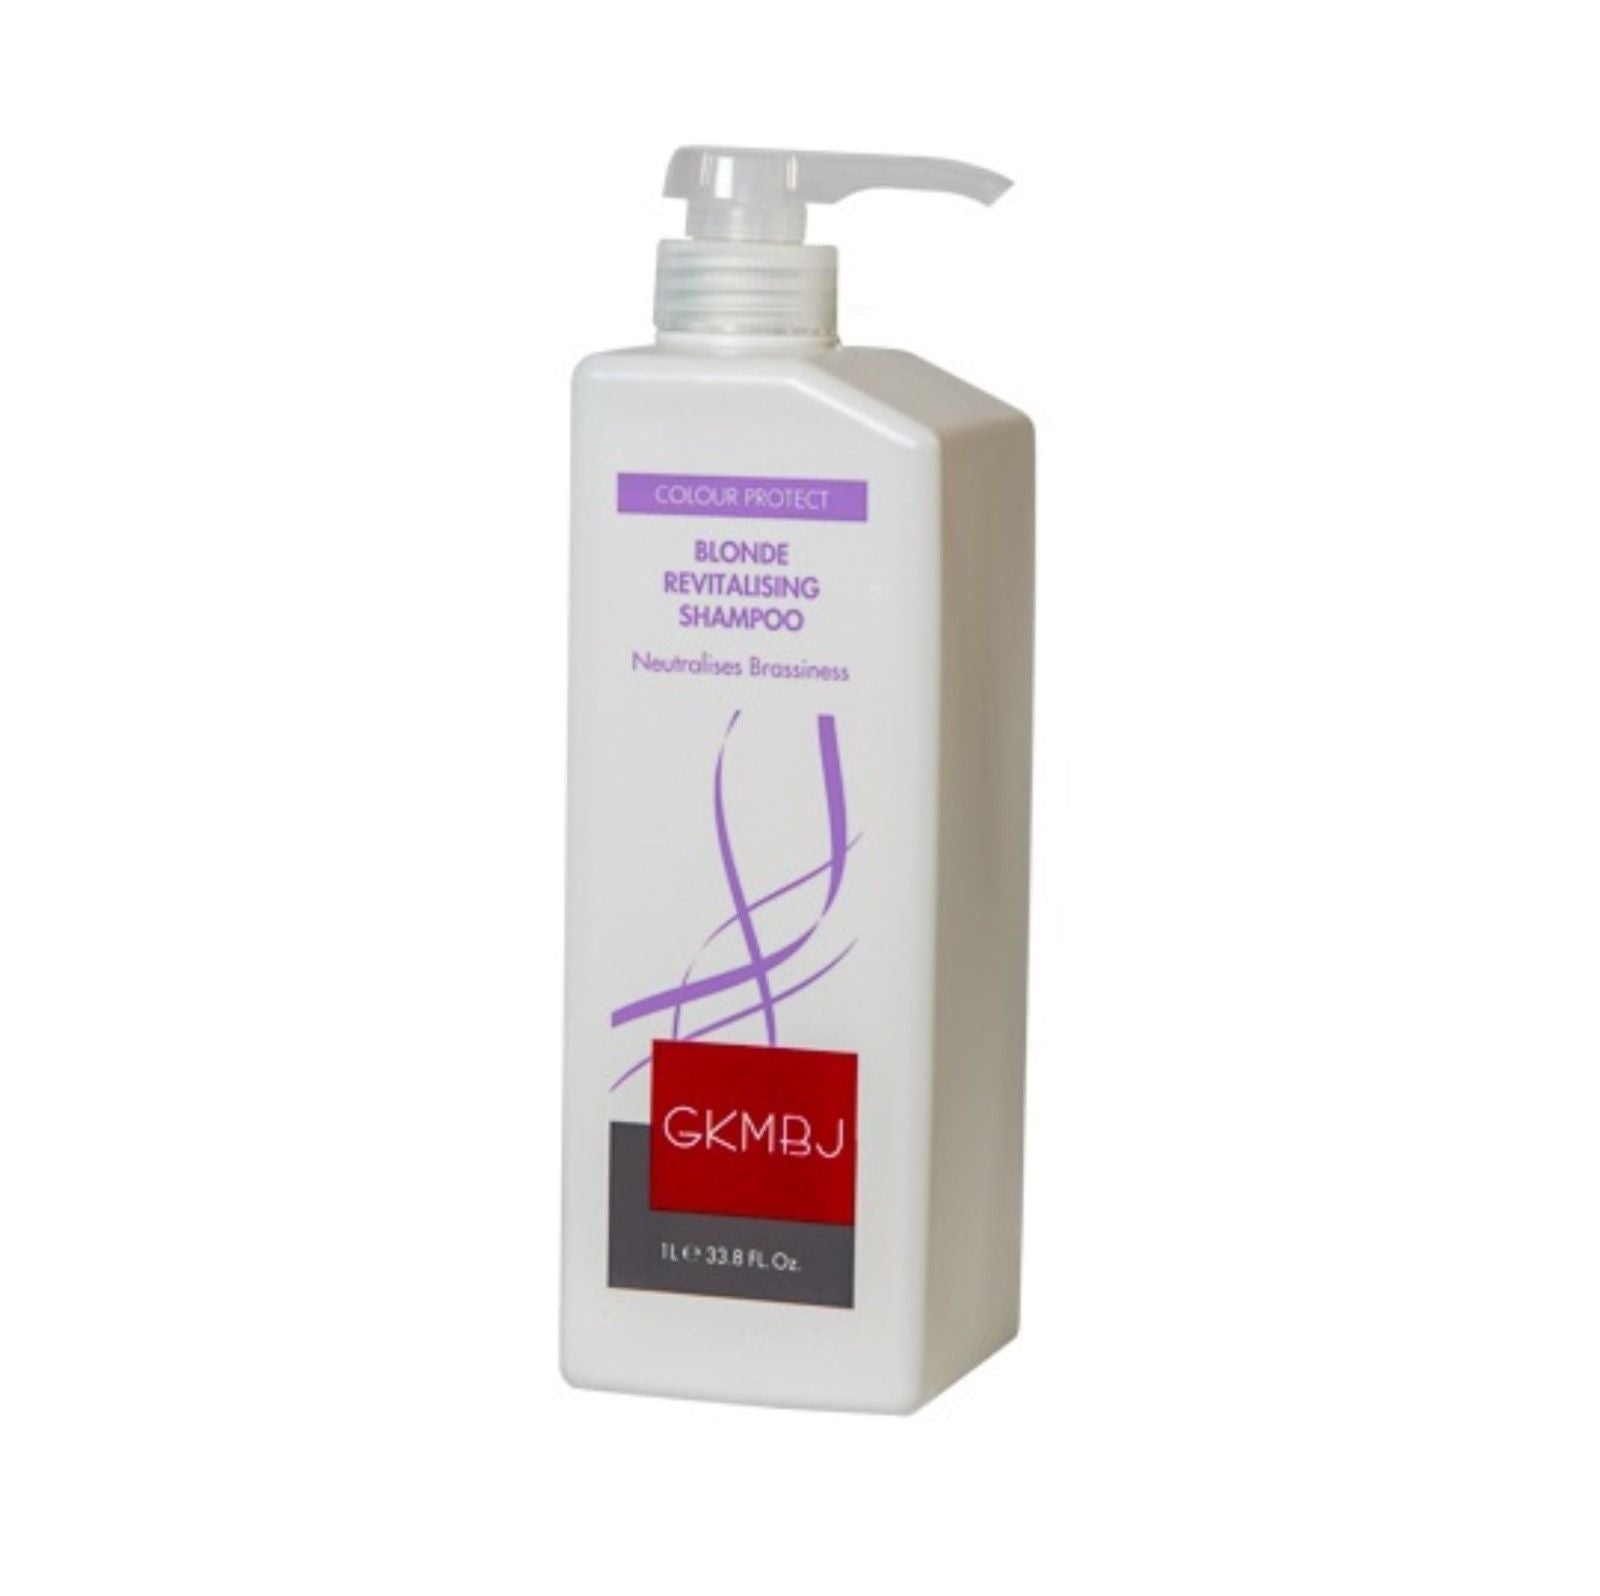 GKMBJ Blonde Revitalising Shampoo 1litre  Neutralises Brassiness - On Line Hair Depot